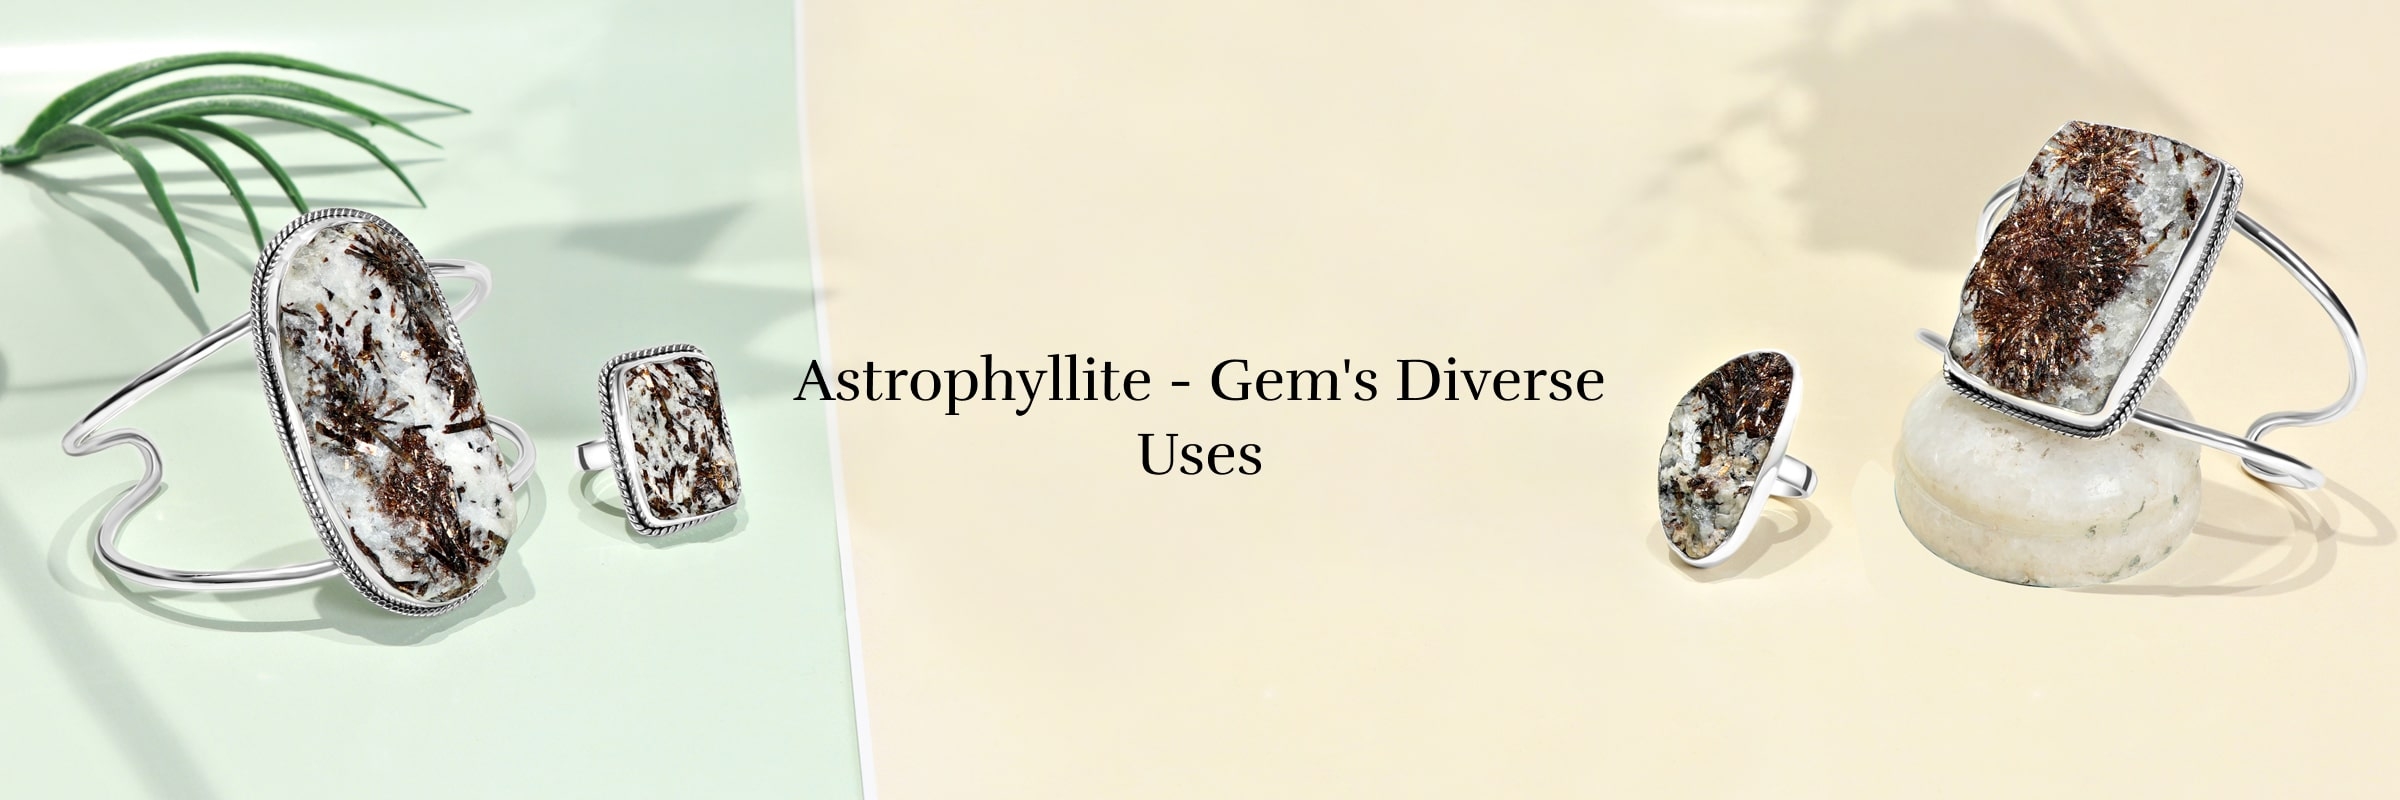 Uses of Astrophyllite Gem